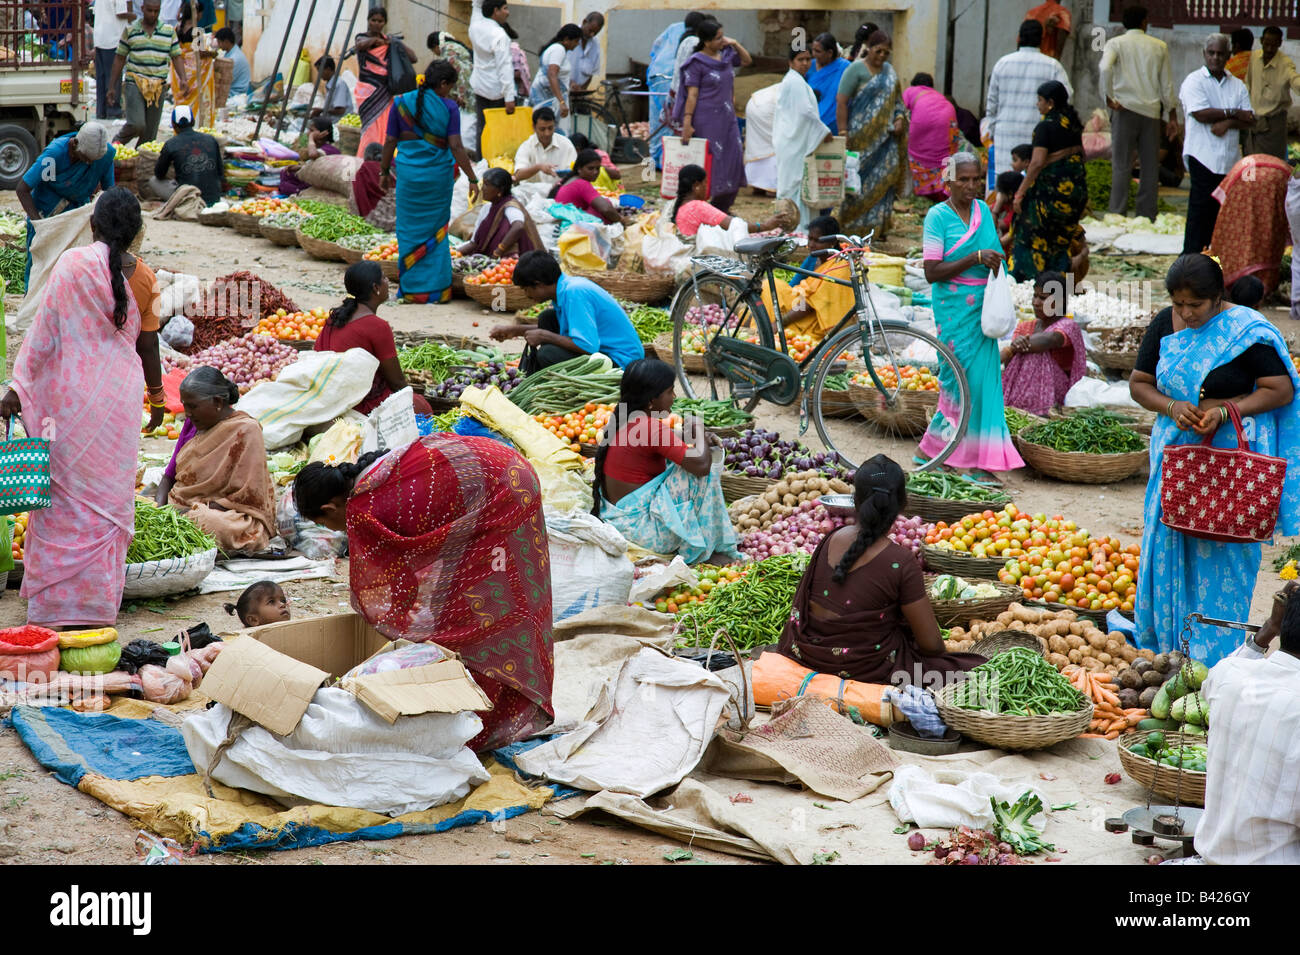 Regardant vers le bas sur l'étal du marché indien avec légumes et épices indiennes / sacs de produire. Puttaparthi, Andhra Pradesh, Inde Banque D'Images